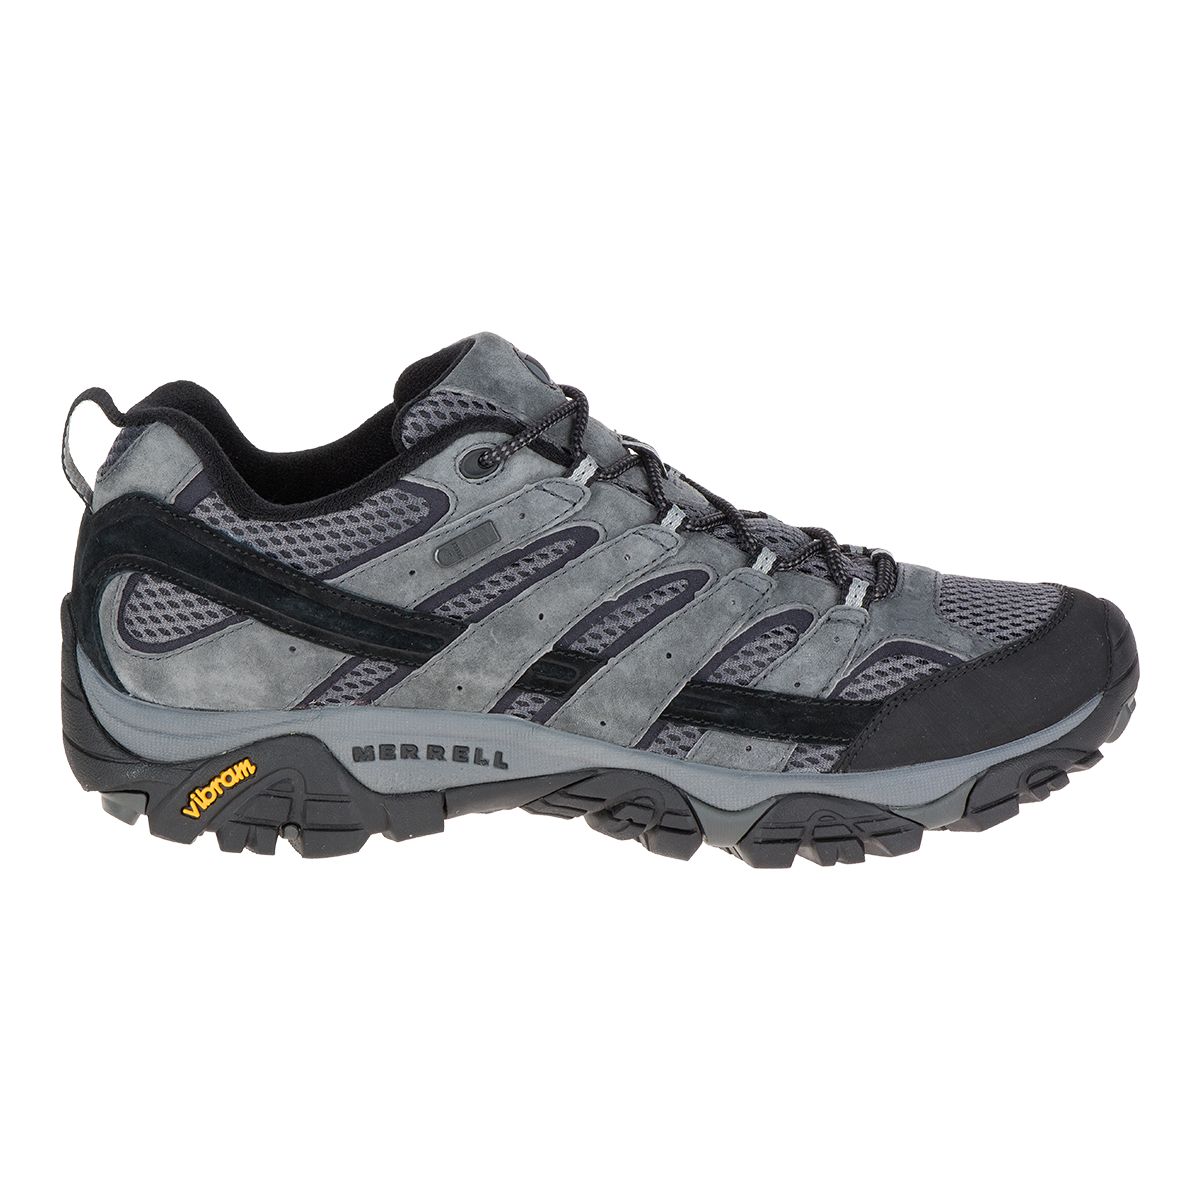 Merrell Men's Moab 2 Hiking Shoes, Waterproof | Sportchek